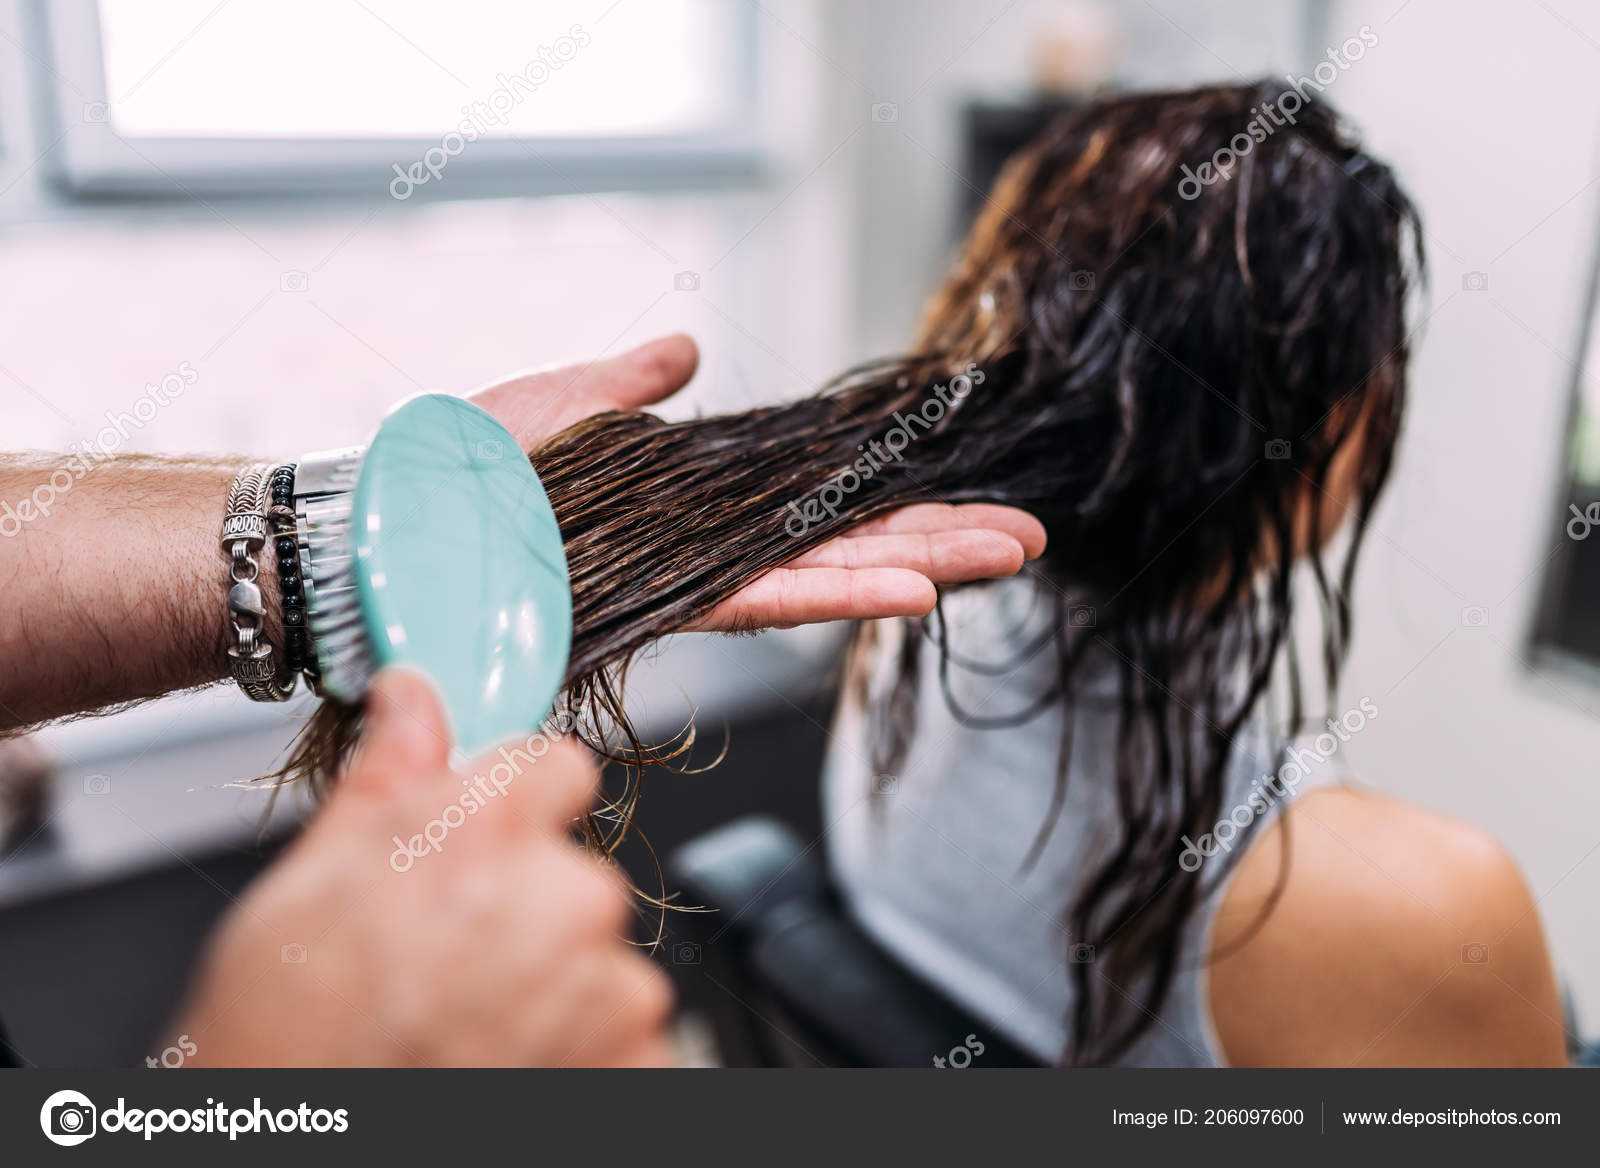 Почему волосы после мытья липкие и не расчесываются